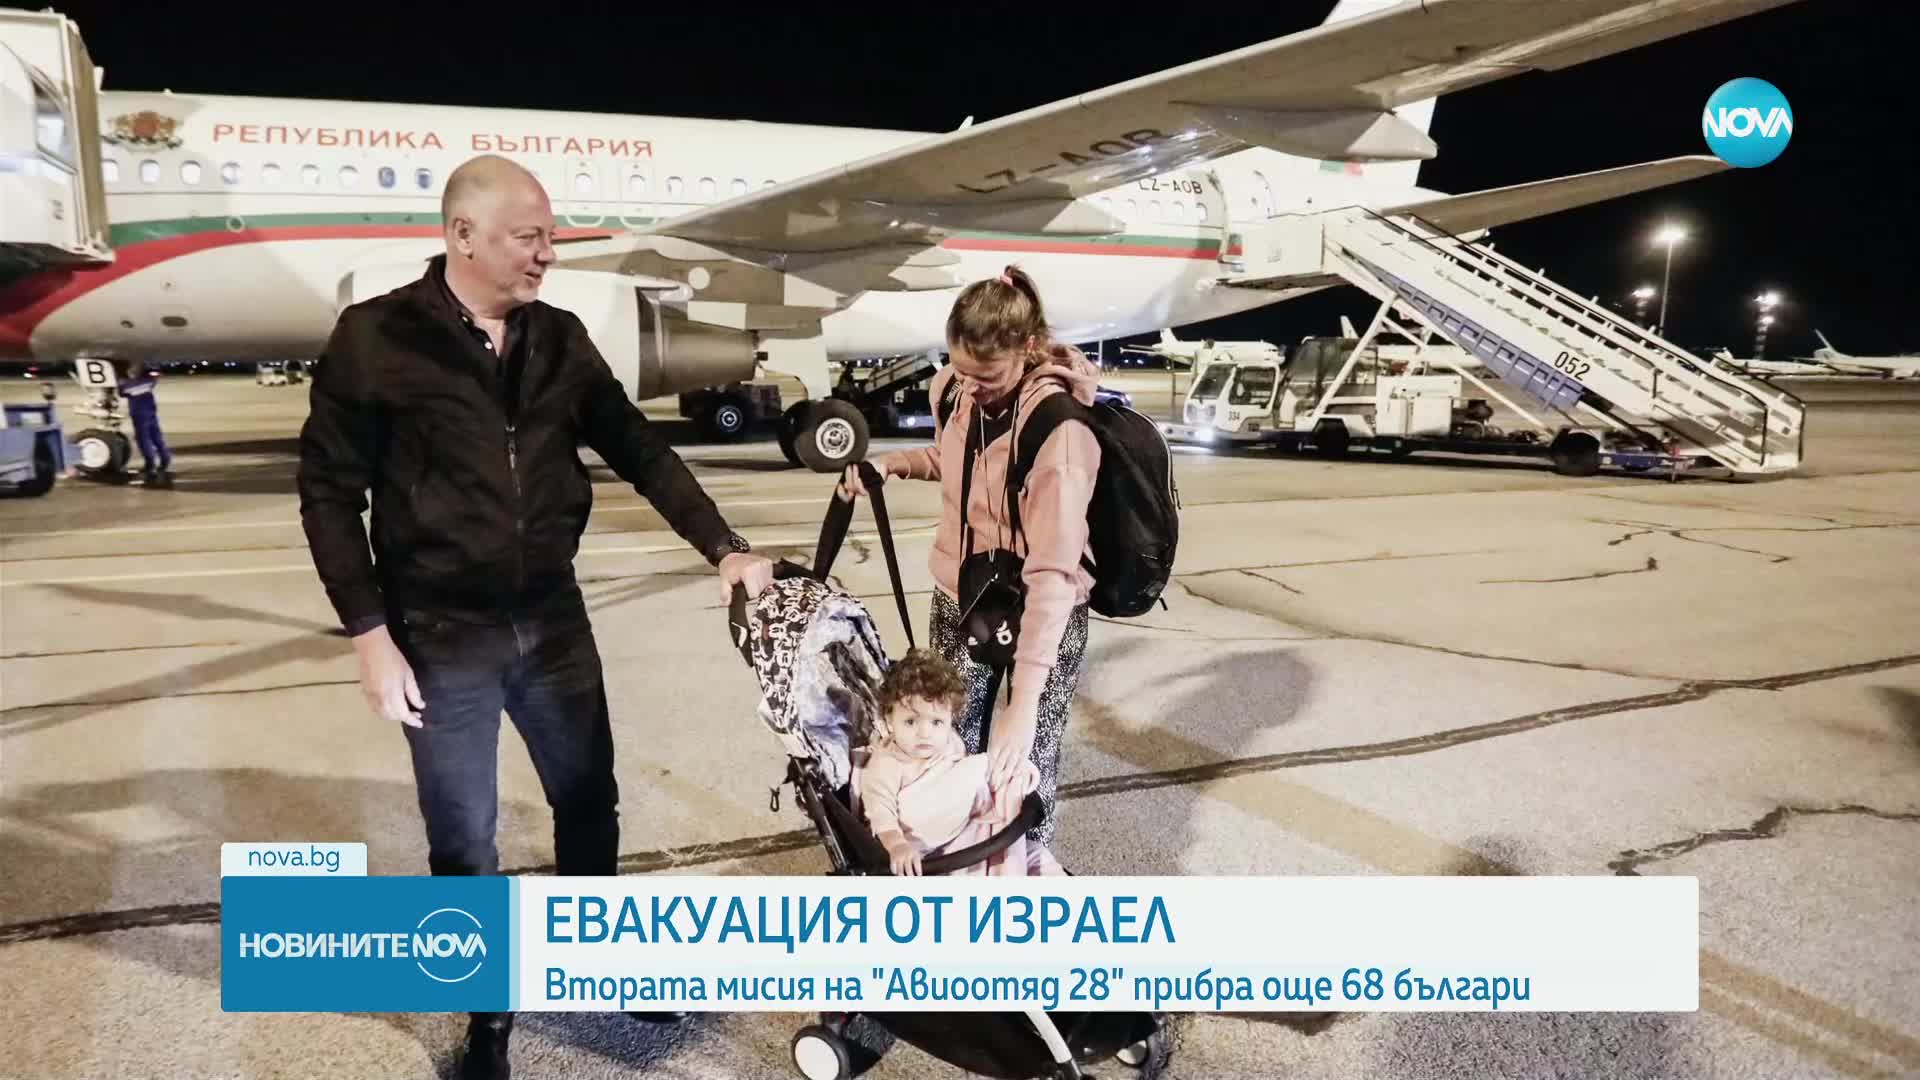 ЕВАКУАЦИЯ ОТ ИЗРАЕЛ: Втора група български граждани пристигна у нас